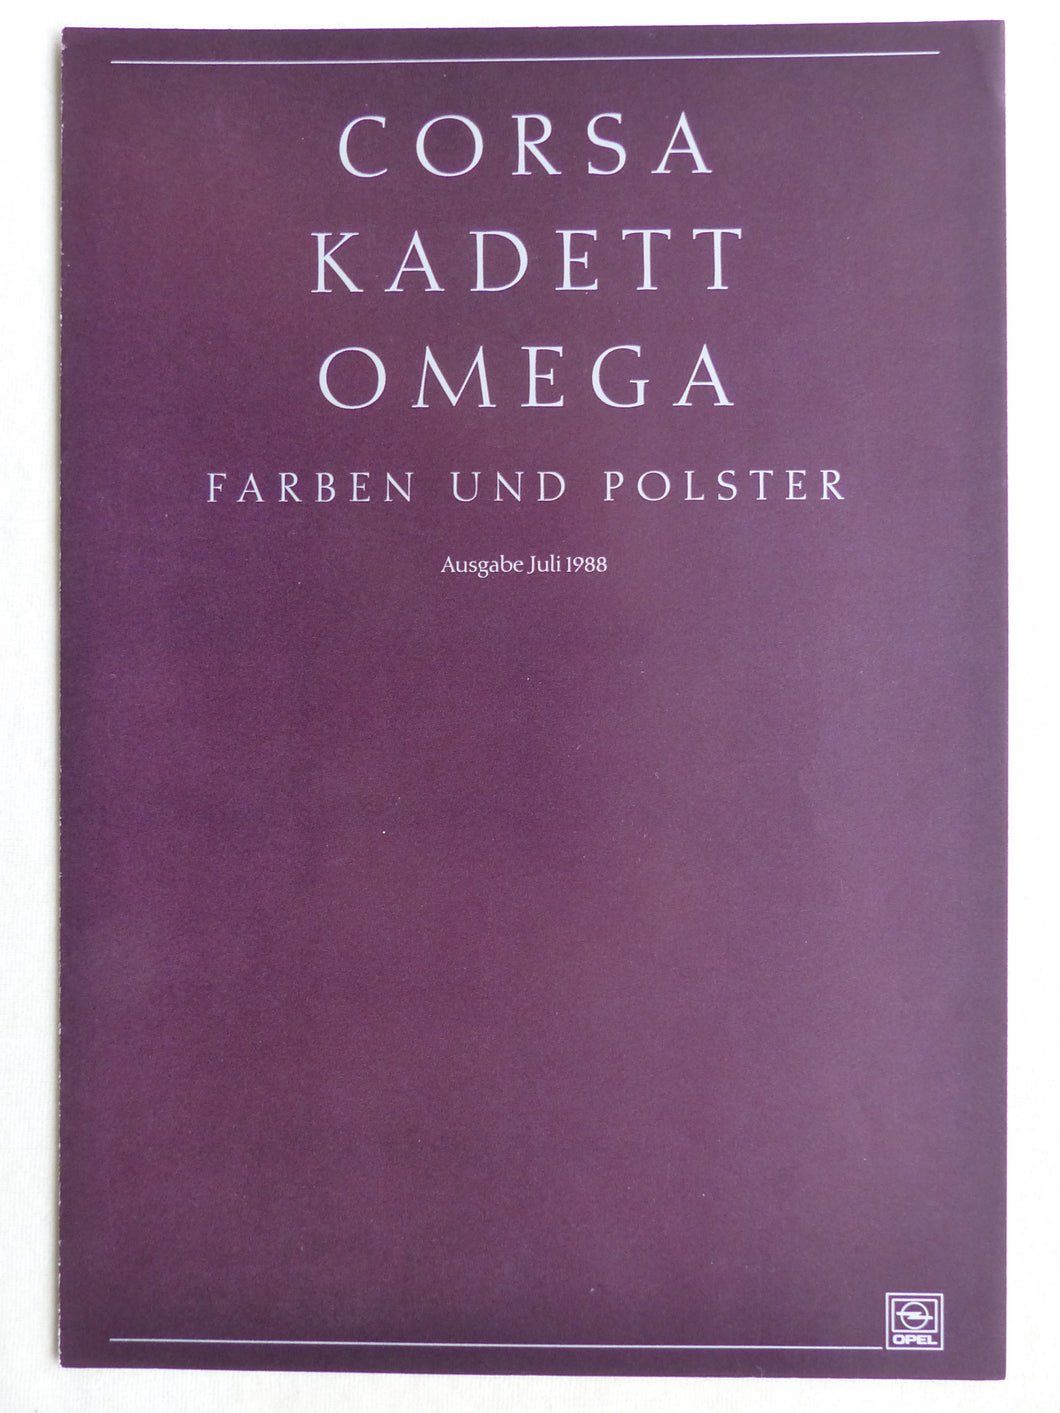 Opel Corsa Kadett Omega - Farben & Polster MJ 1989 - Prospekt Brochure 07.1988